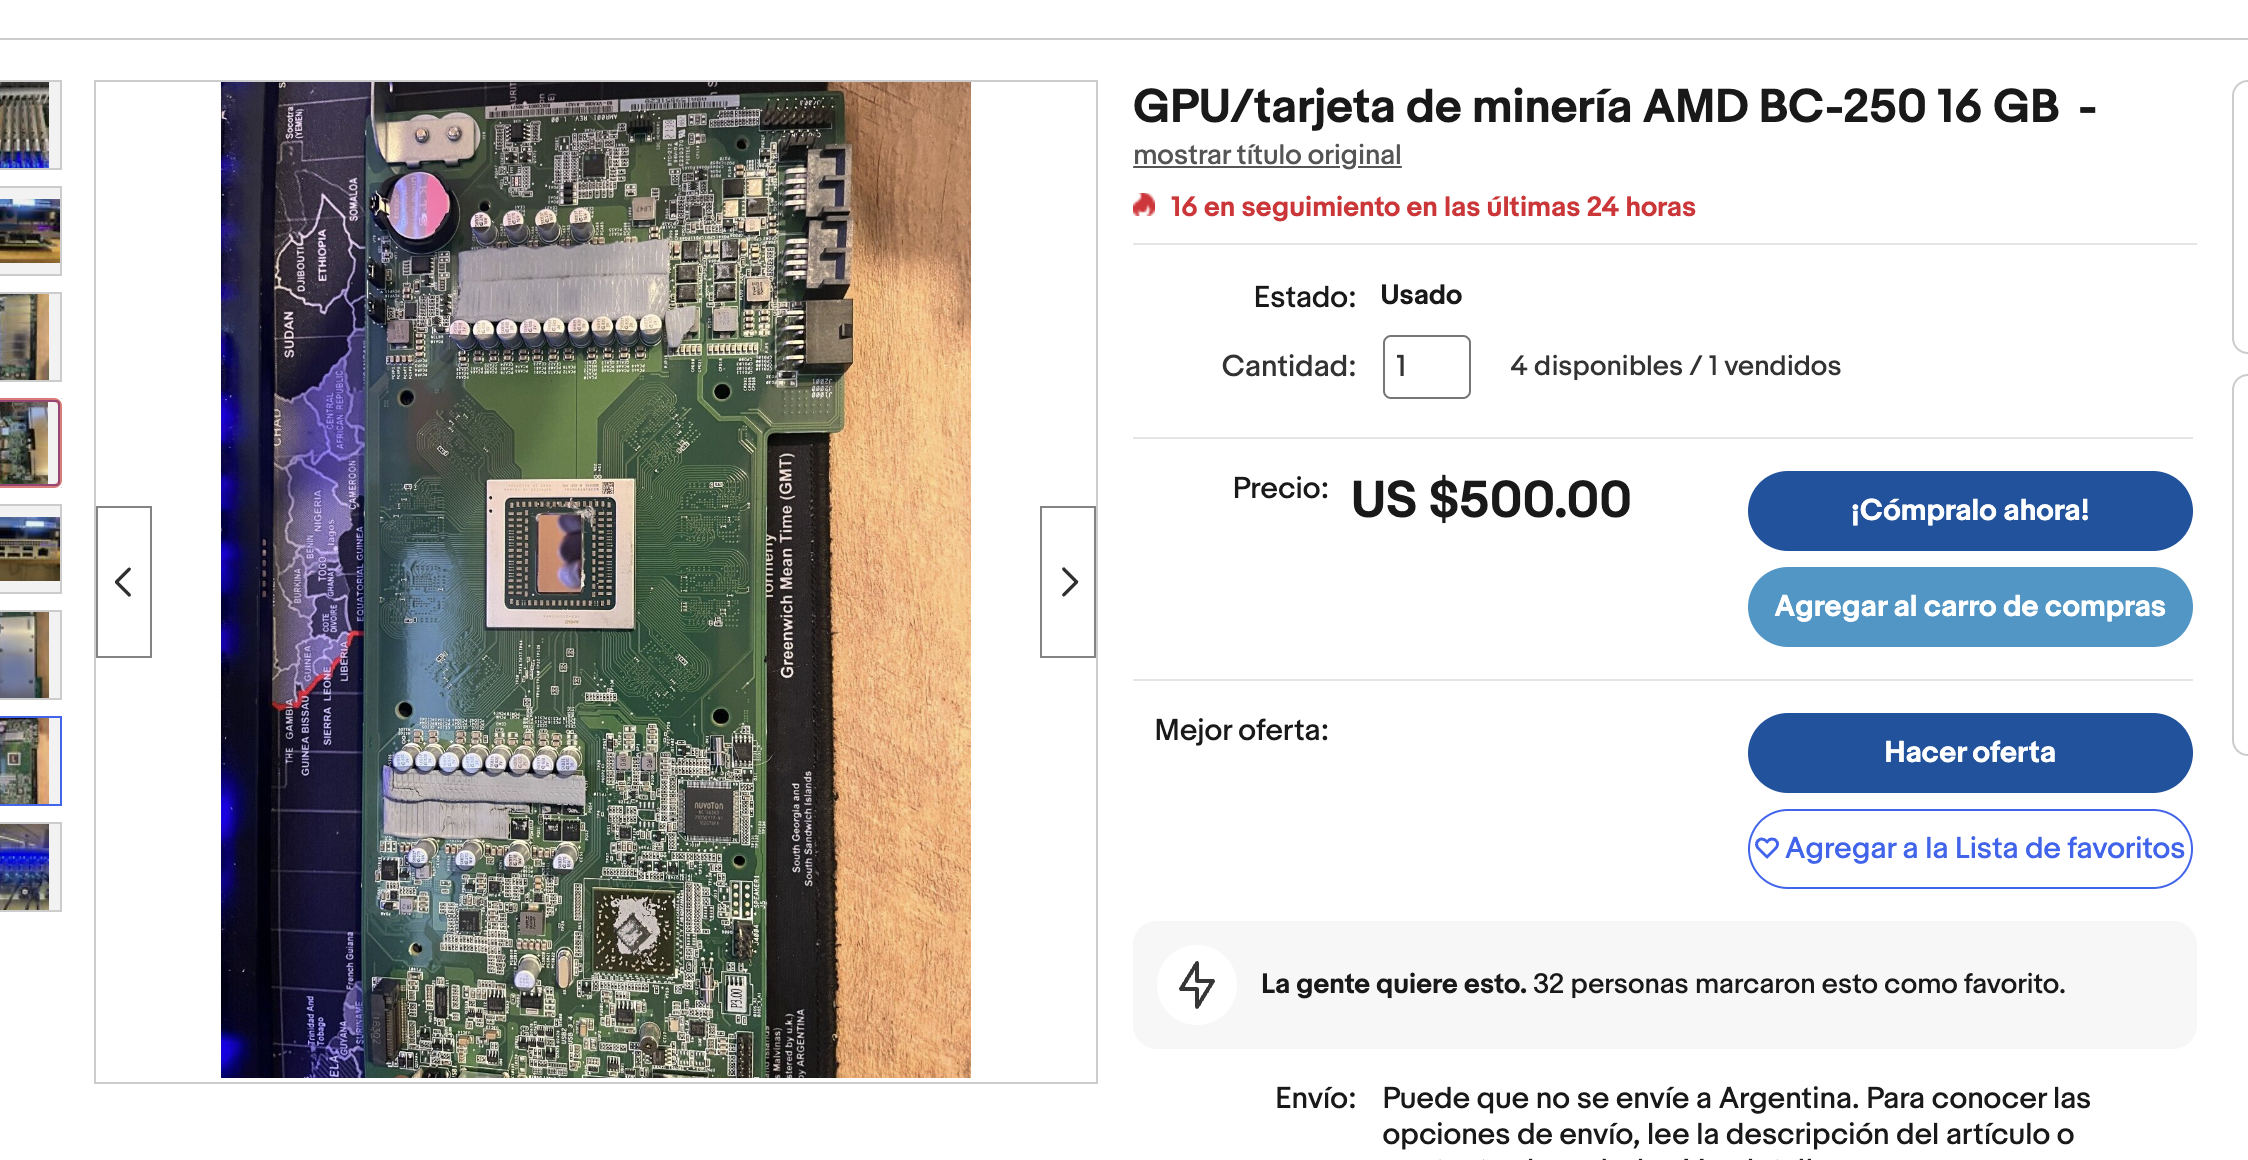 Превращенный в GPU для майнинга чип из PlayStation 5 начали продавать на eBay за $500